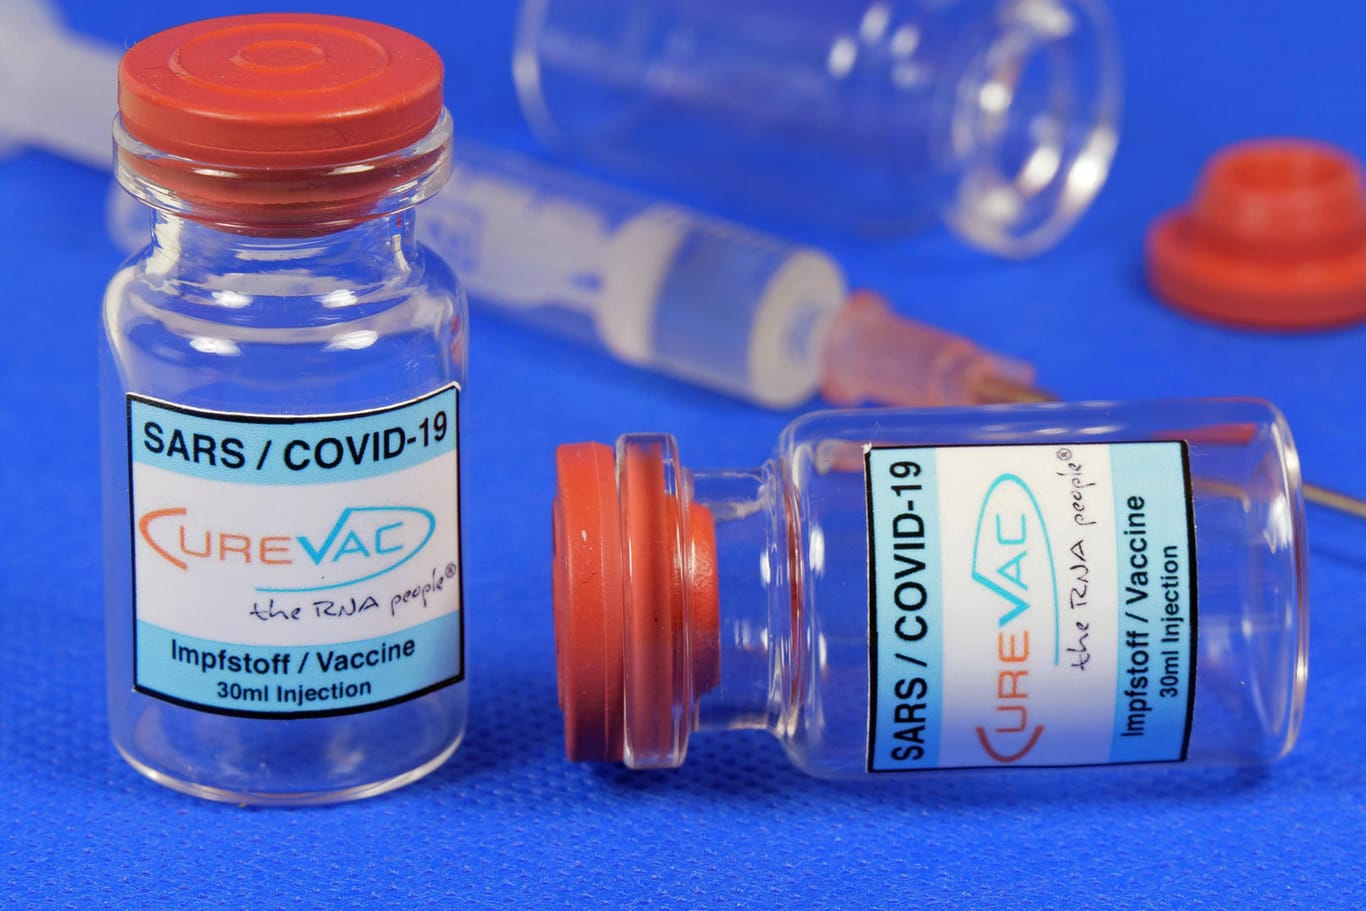 Der Corona-Impfstoff von Curevac: Der Vorstand des Herstellers hält die Kritik an der niedrigen Wirksamkeit des Impfstoffes für nicht gerechtfertigt (Symbolfoto).